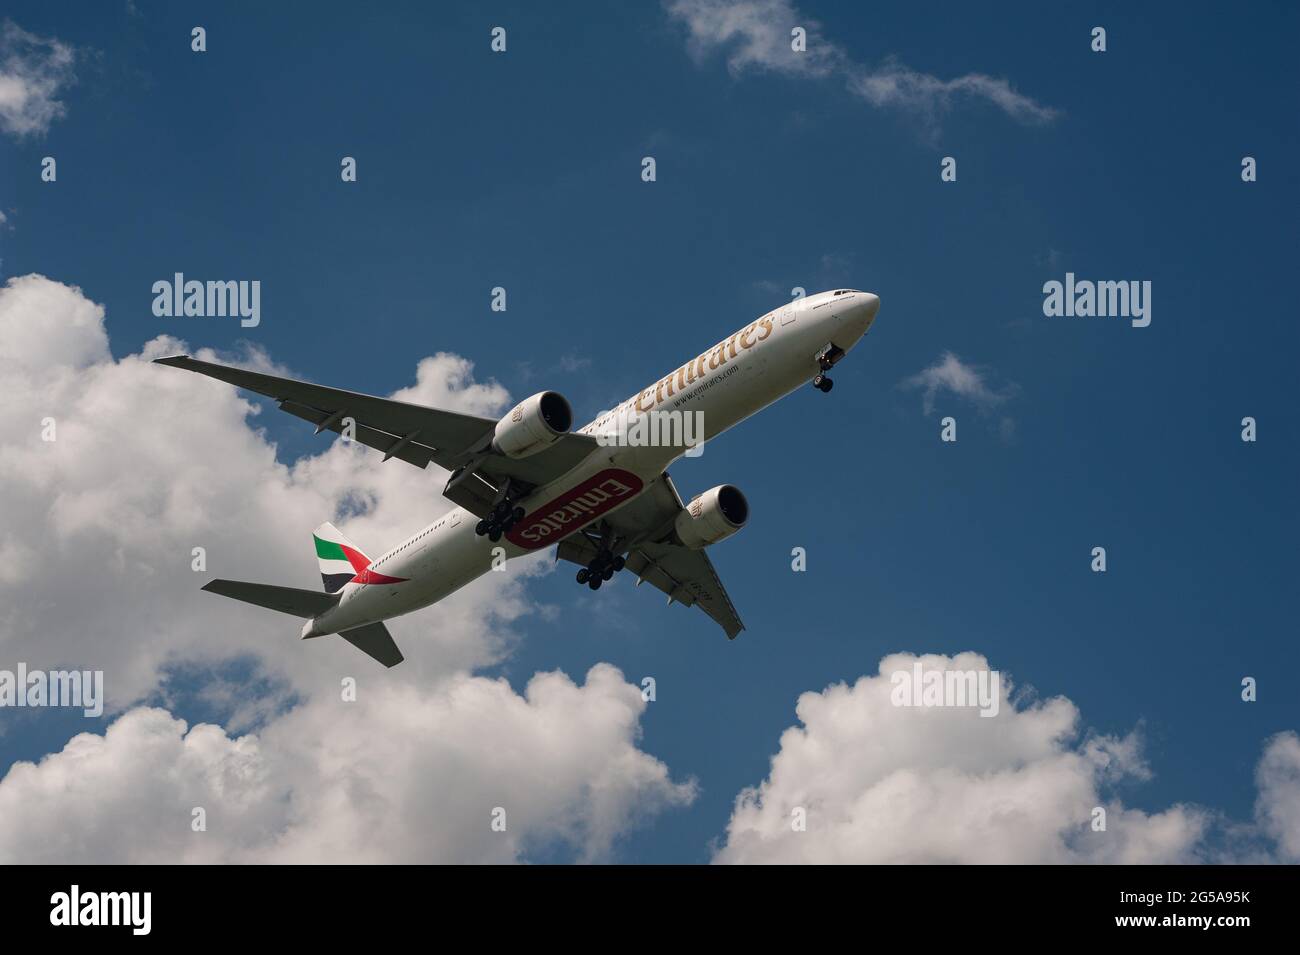 23.06.2021, Singapur, Republik Singapur, Asien - ein Passagierjet der Emirates Airline Boeing 777-300 er nähert sich dem Changi Airport zur Landung. Stockfoto